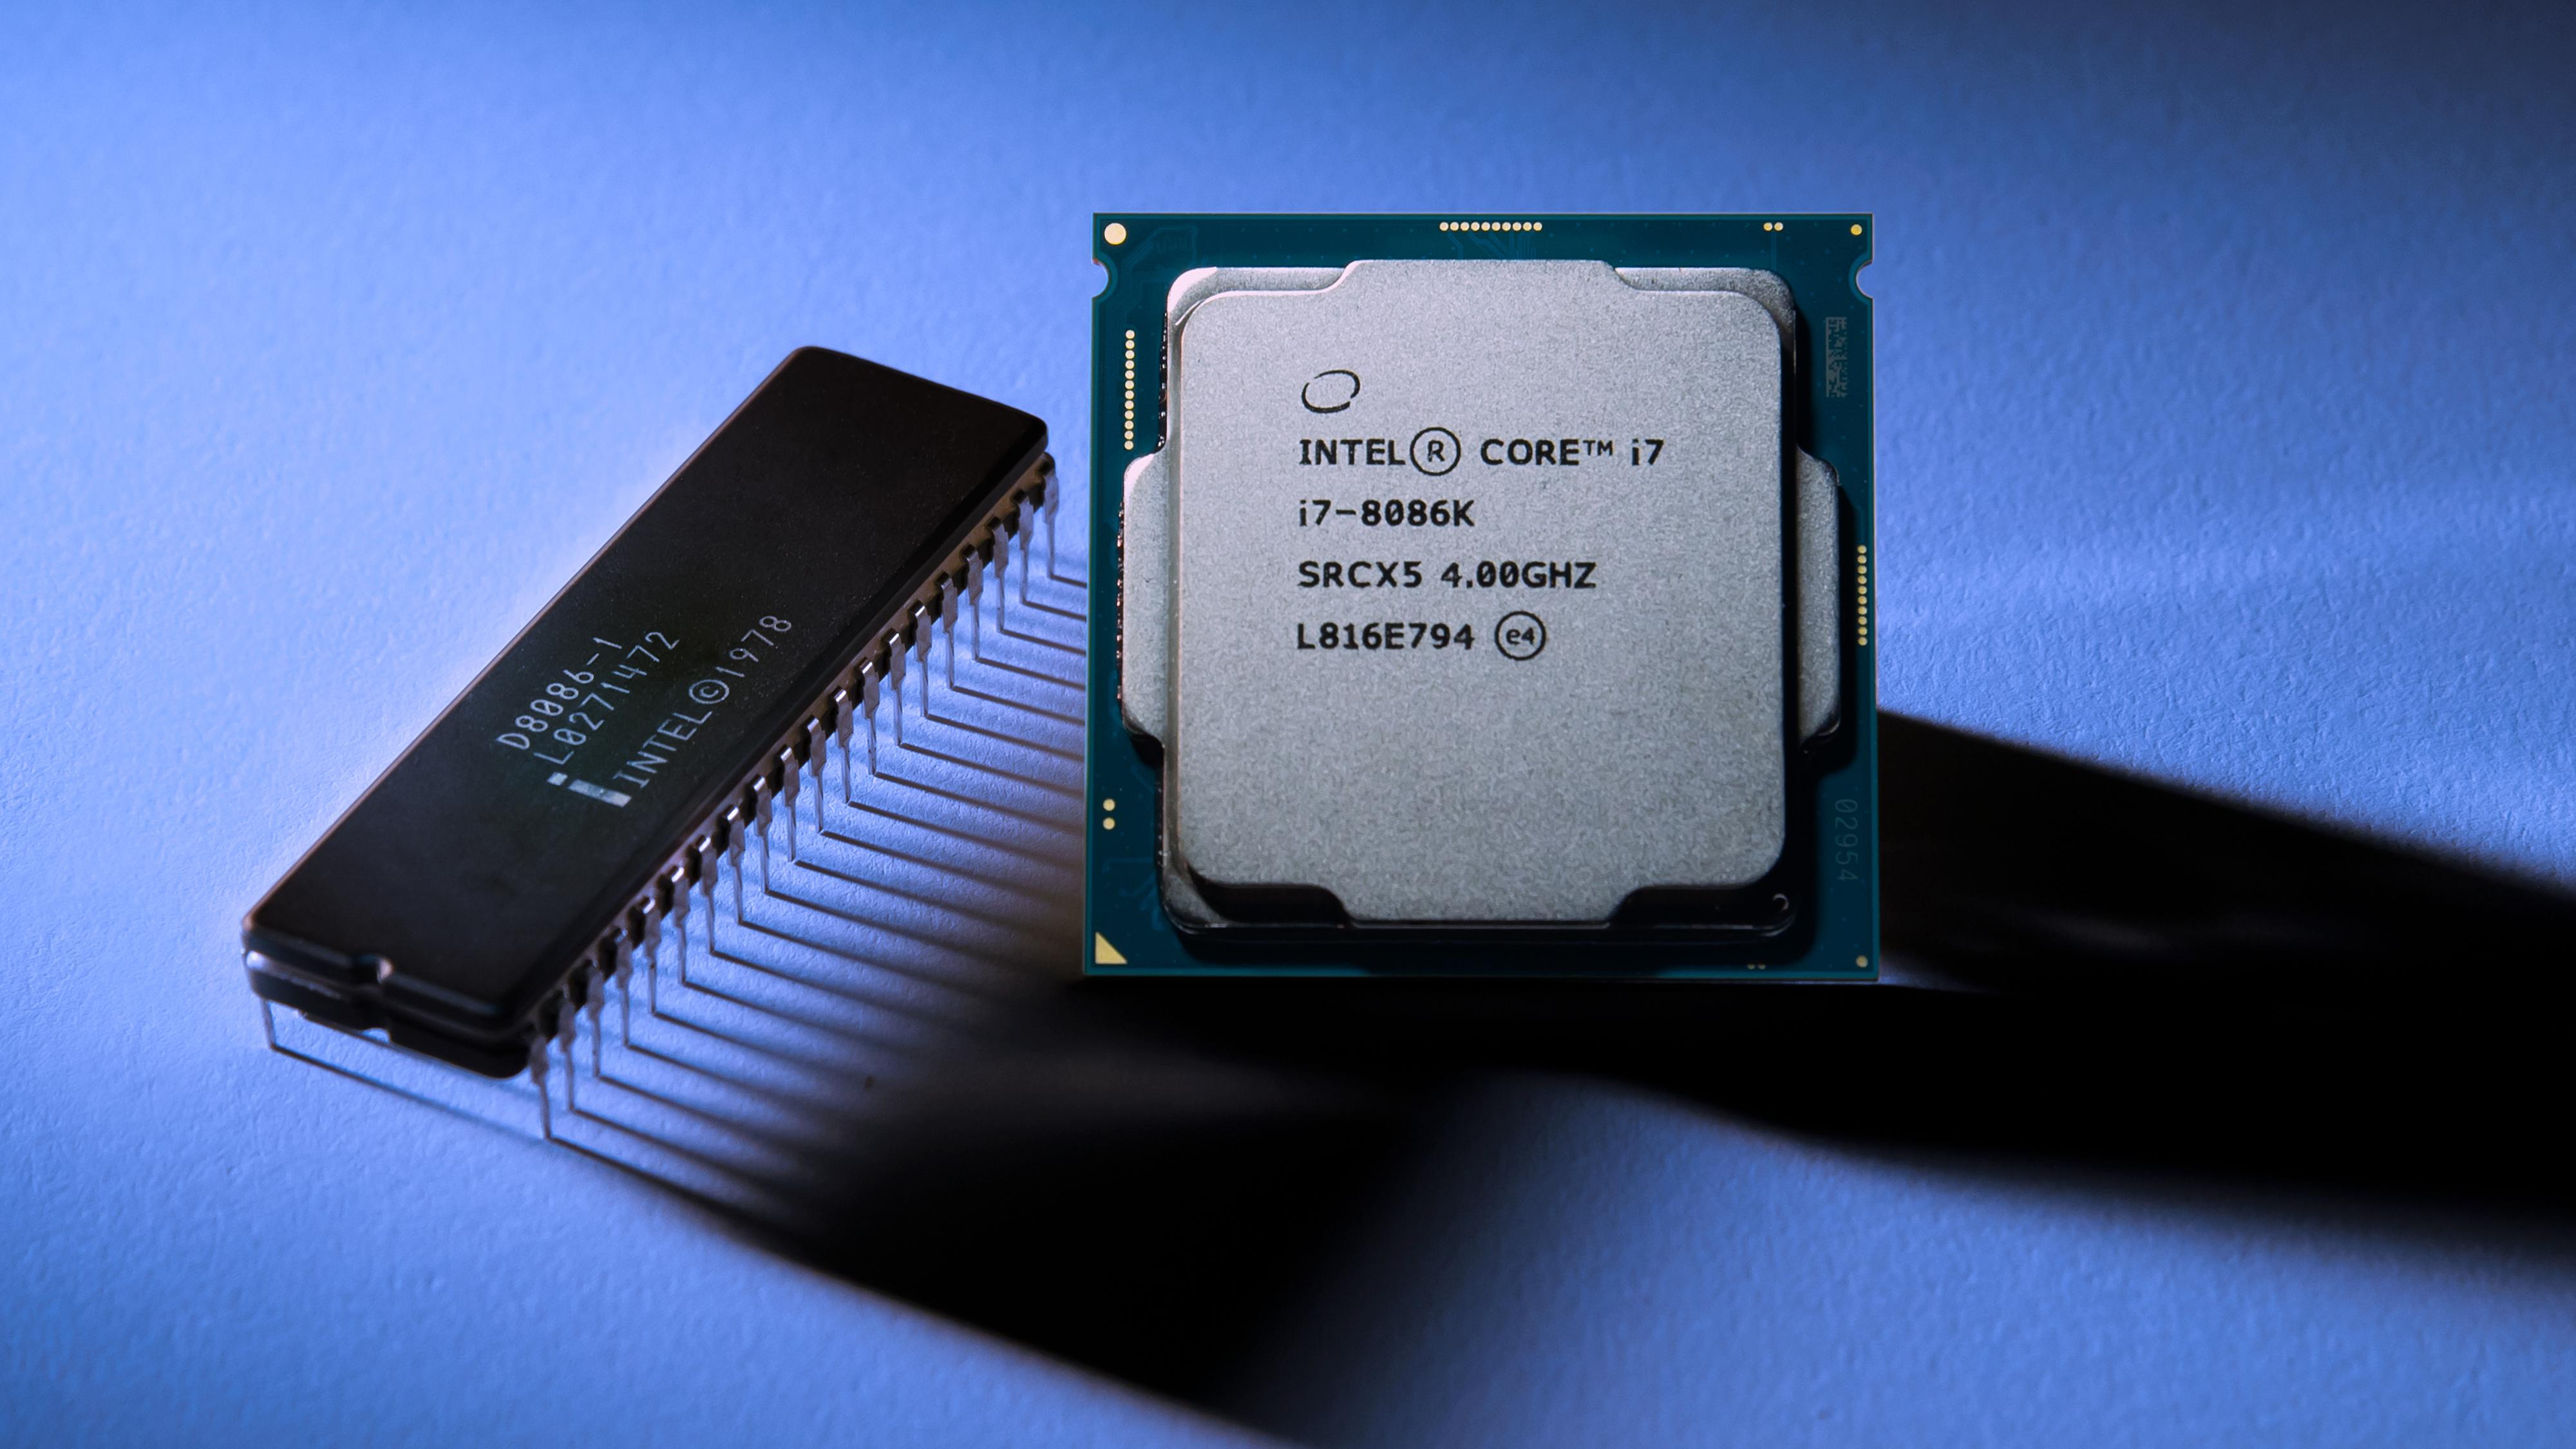 Her ser vi den originale Intel 8086 prosessoren fra 1978 ved siden av den nye Core i7-8086K.